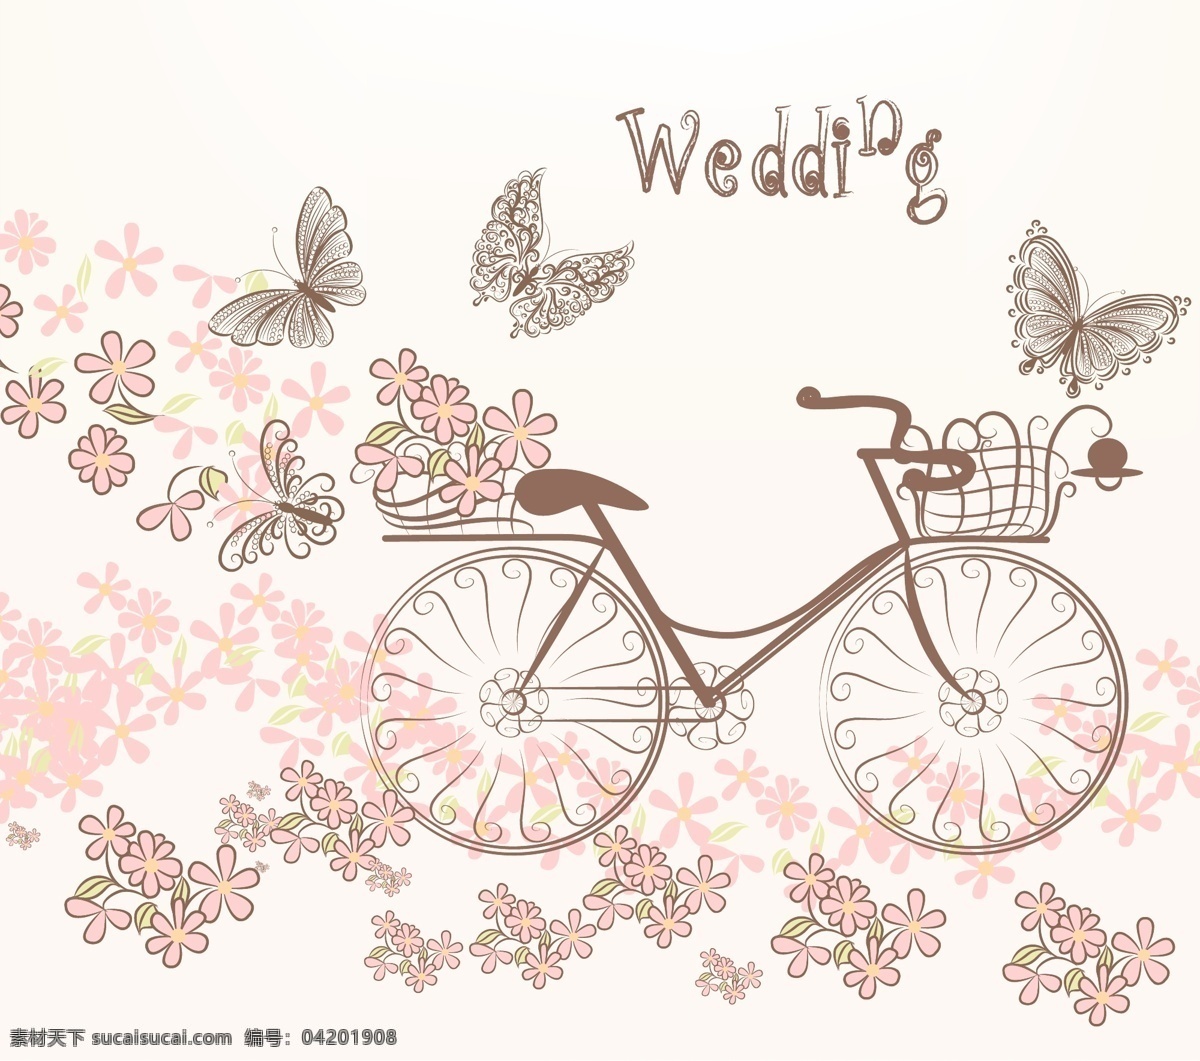 鲜花单车 浪漫单车 手绘单车 单车印花 菊花 百合花 夏季 鲜花 单车 自行车 交通工具设计 底纹边框 背景底纹